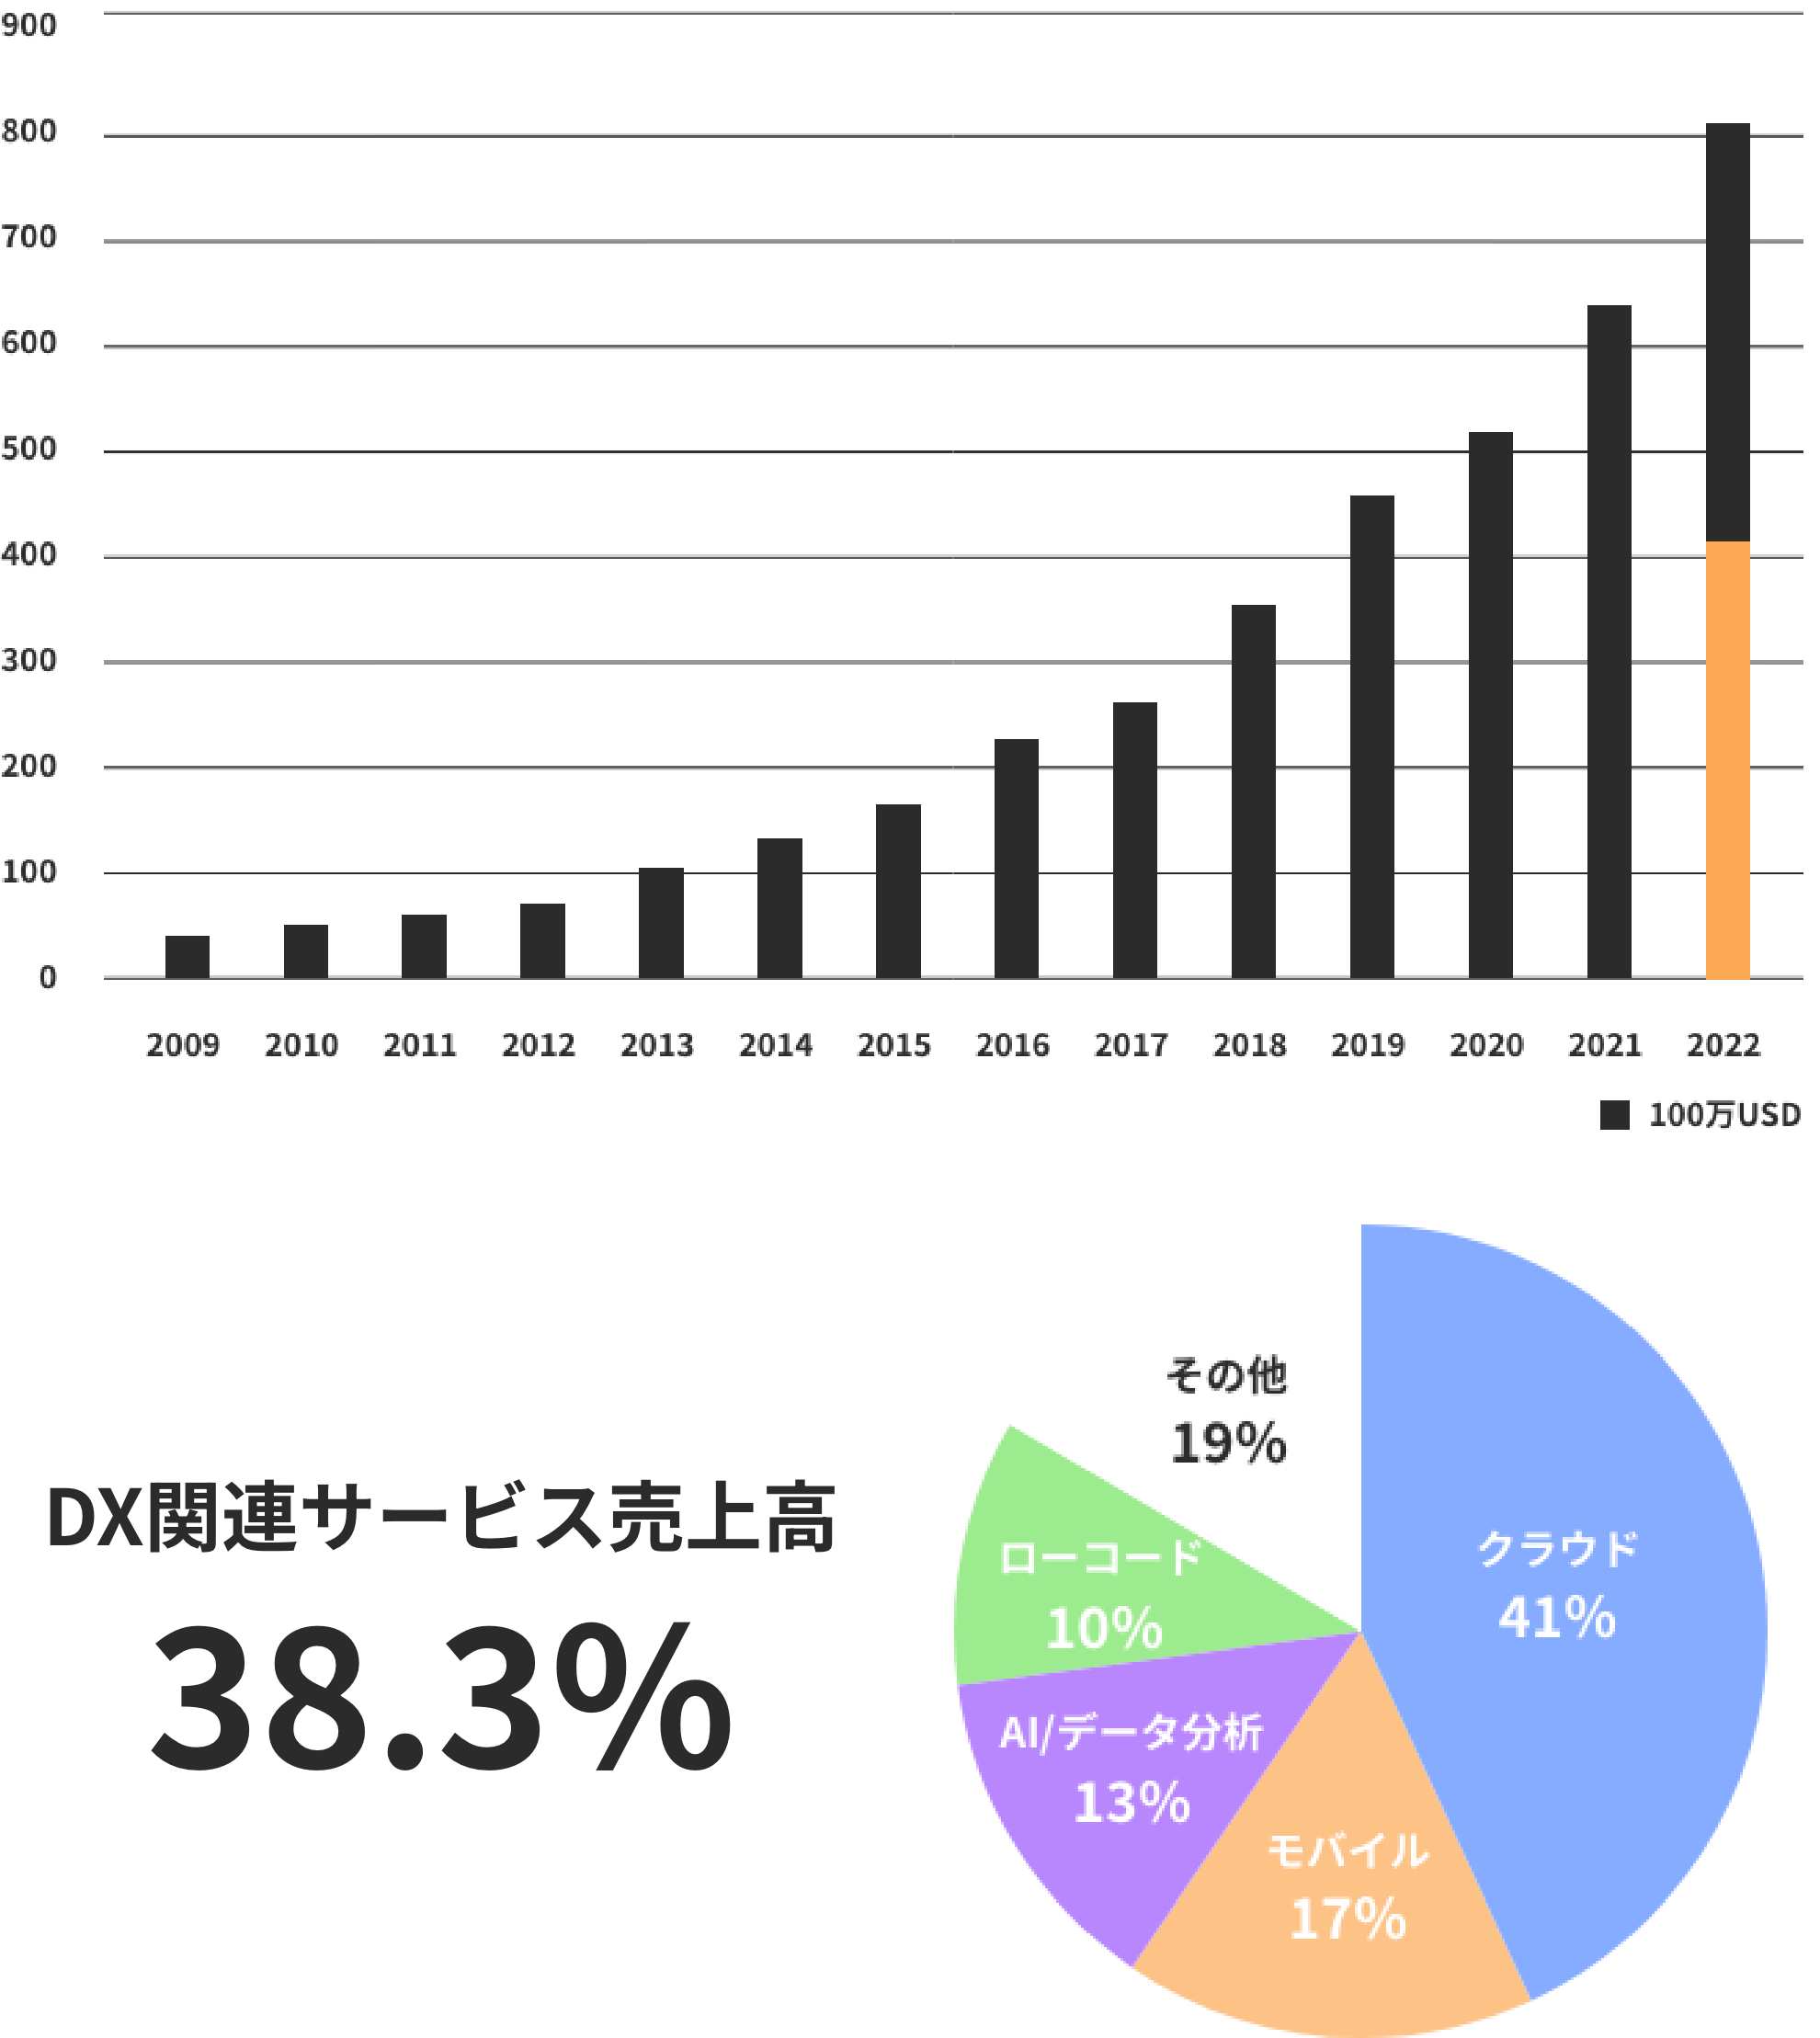 DX関連サービス売上高38.3%,クラウド41%,モバイル17%,AI/データ分析13%,ローコード10%,その他19%